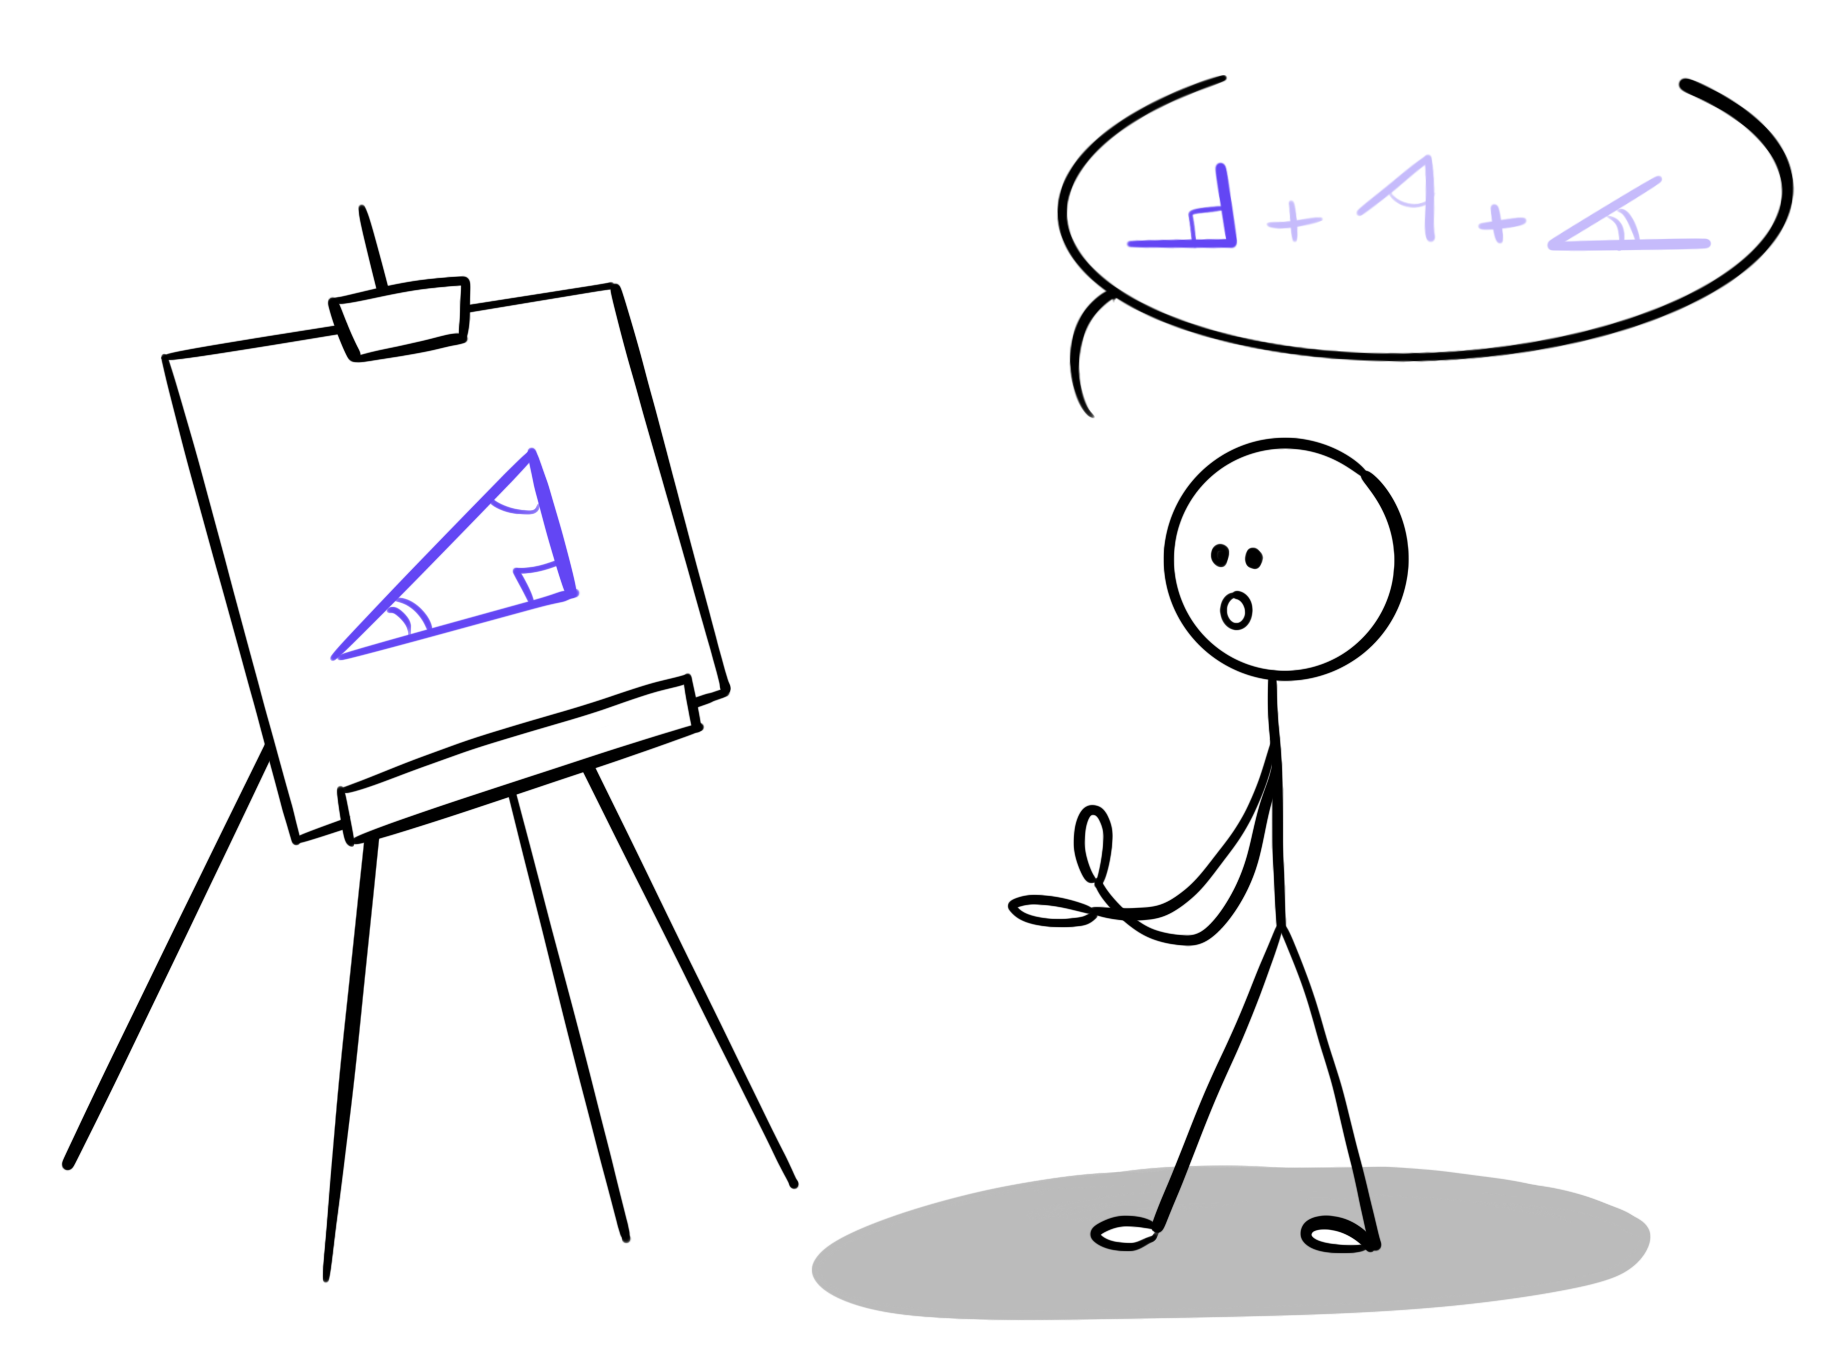 À gauche, un triangle est représenté sur un tableau noir. A droite, un mathématicien exprime la somme des angles du triangle en formant ces angles avec ses mains.